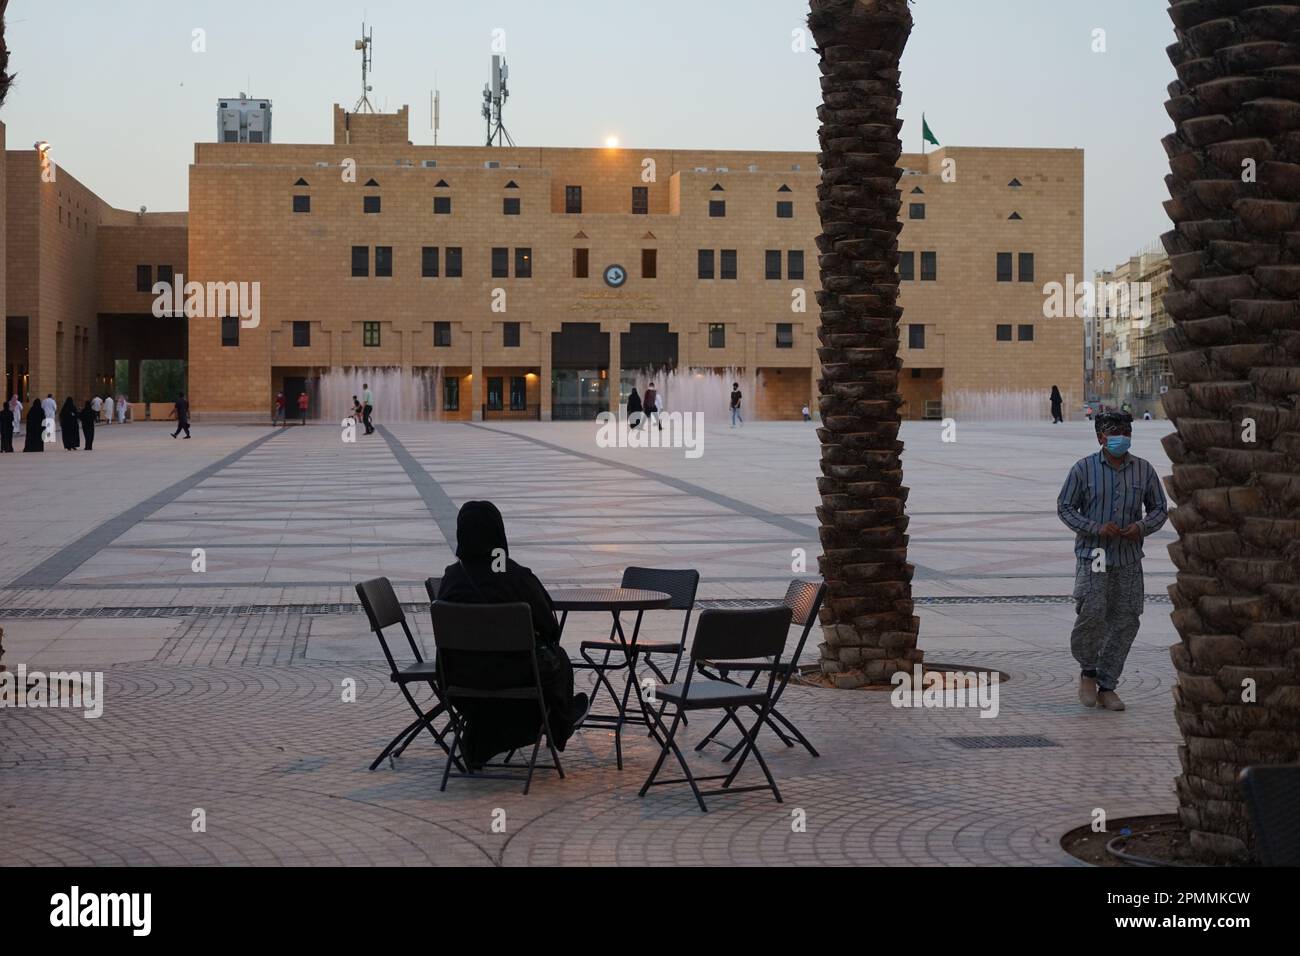 A woman in niqab drinking coffee, Deera Square, Riyadh, Saudi Arabia Stock Photo